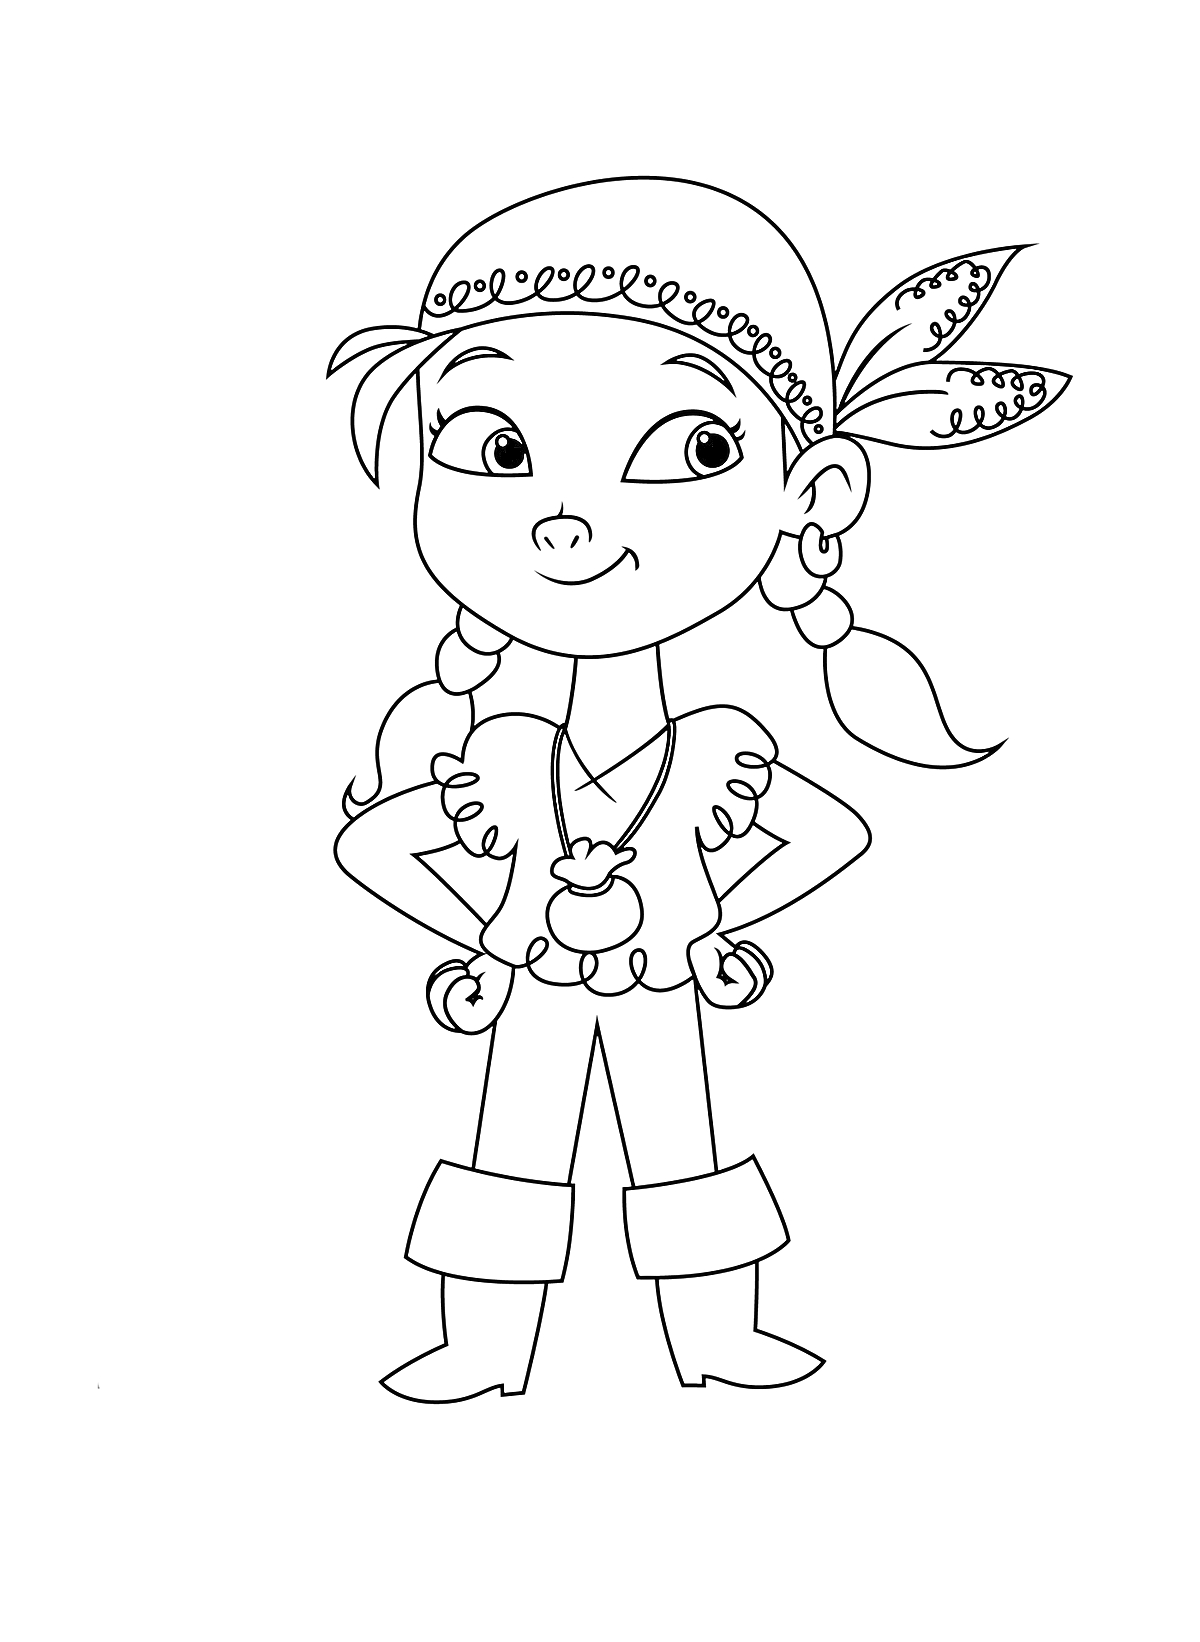 Девочка-пиратка с платком на голове, кудрявыми волосами и серьгами